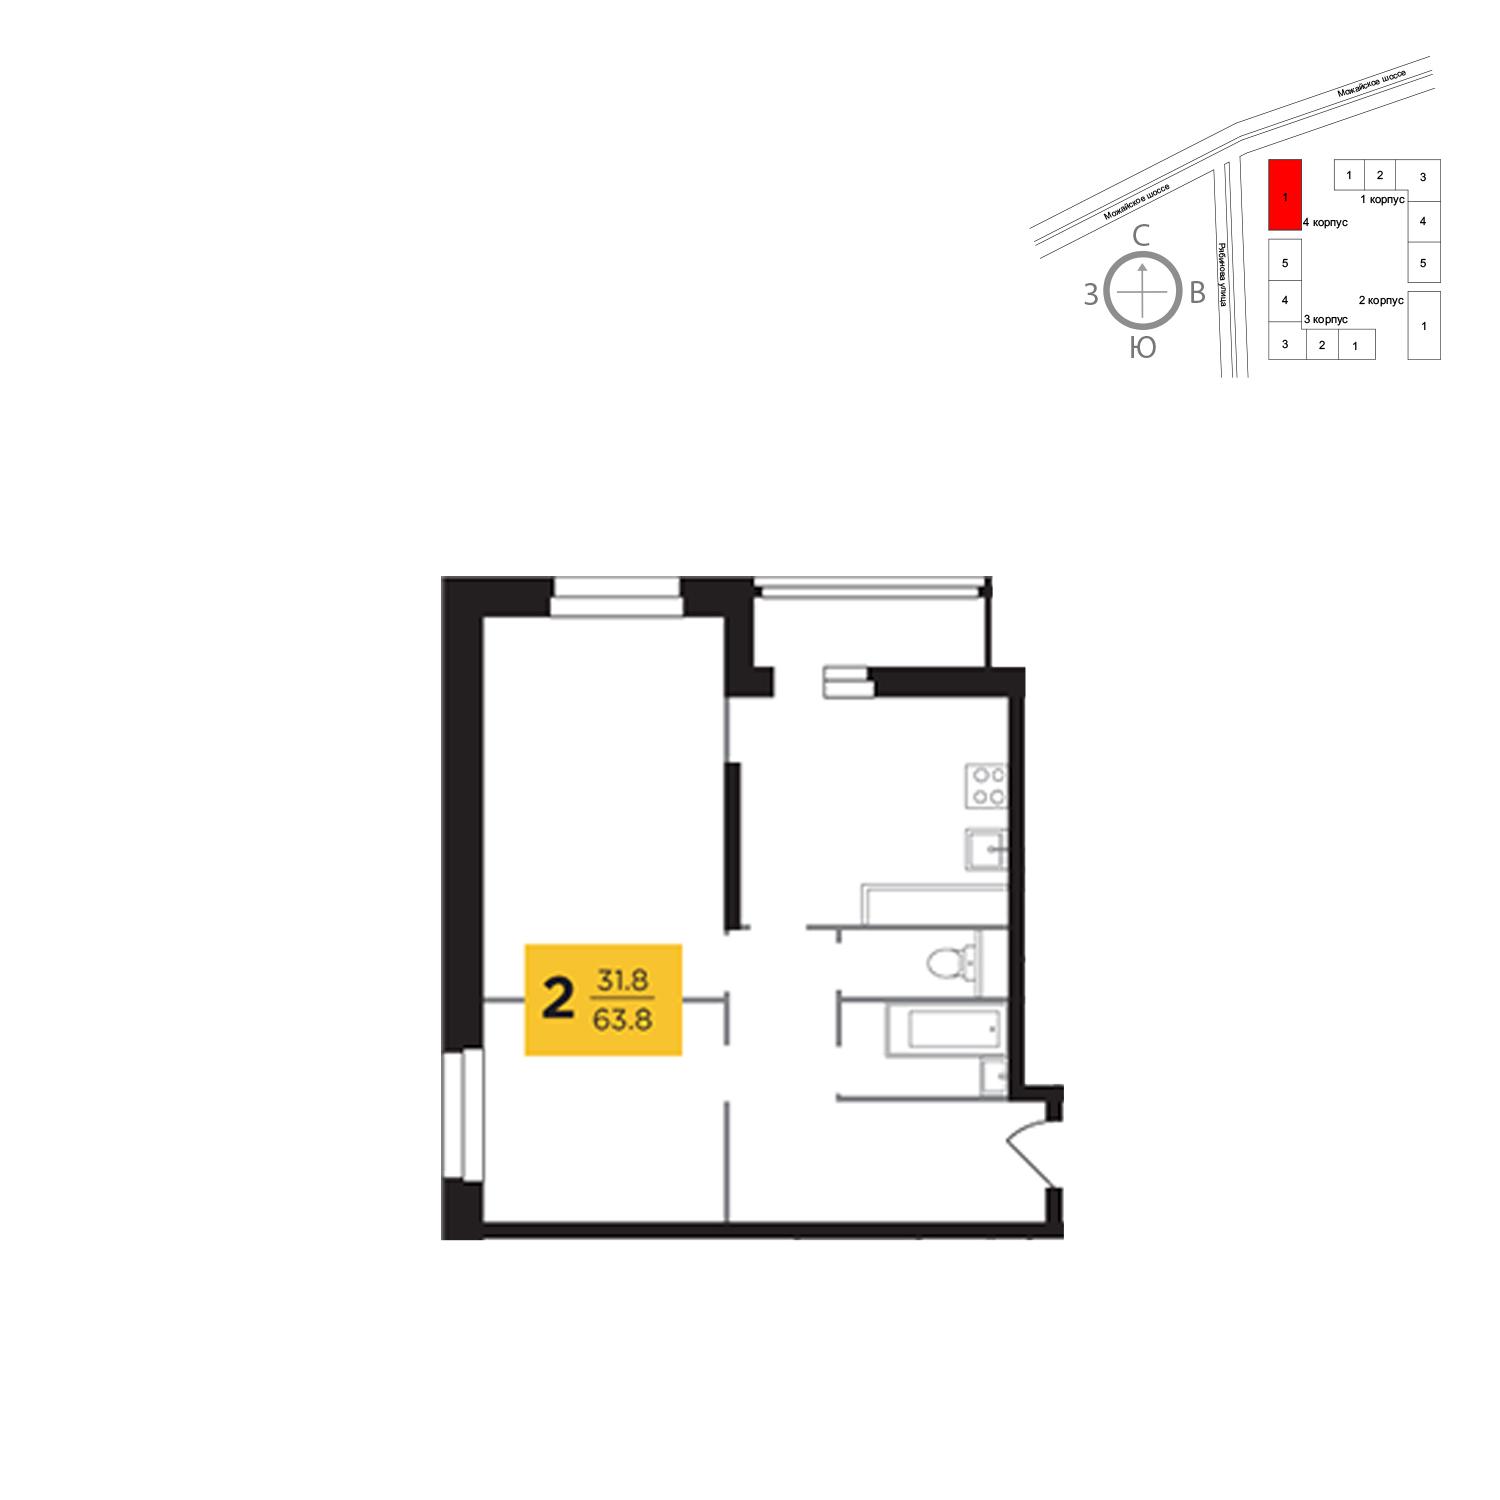 Продаётся 2-комнатная квартира в новостройке 63.8 кв.м. этаж 12/23 за 13 003 942 руб 